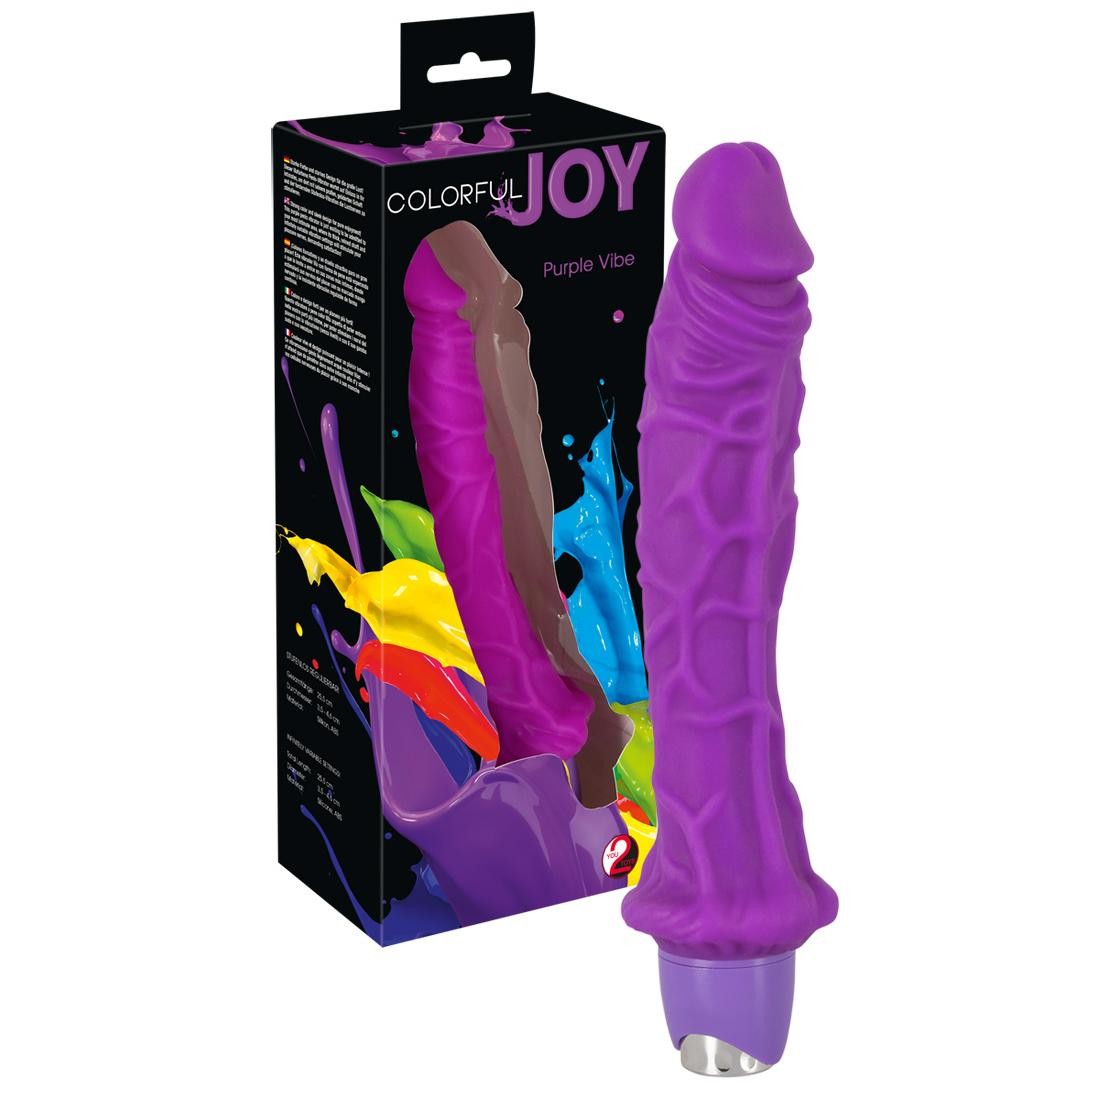  You2Toys  -  Colorful  Joy  Purple  Vibe  -  Vibrator 